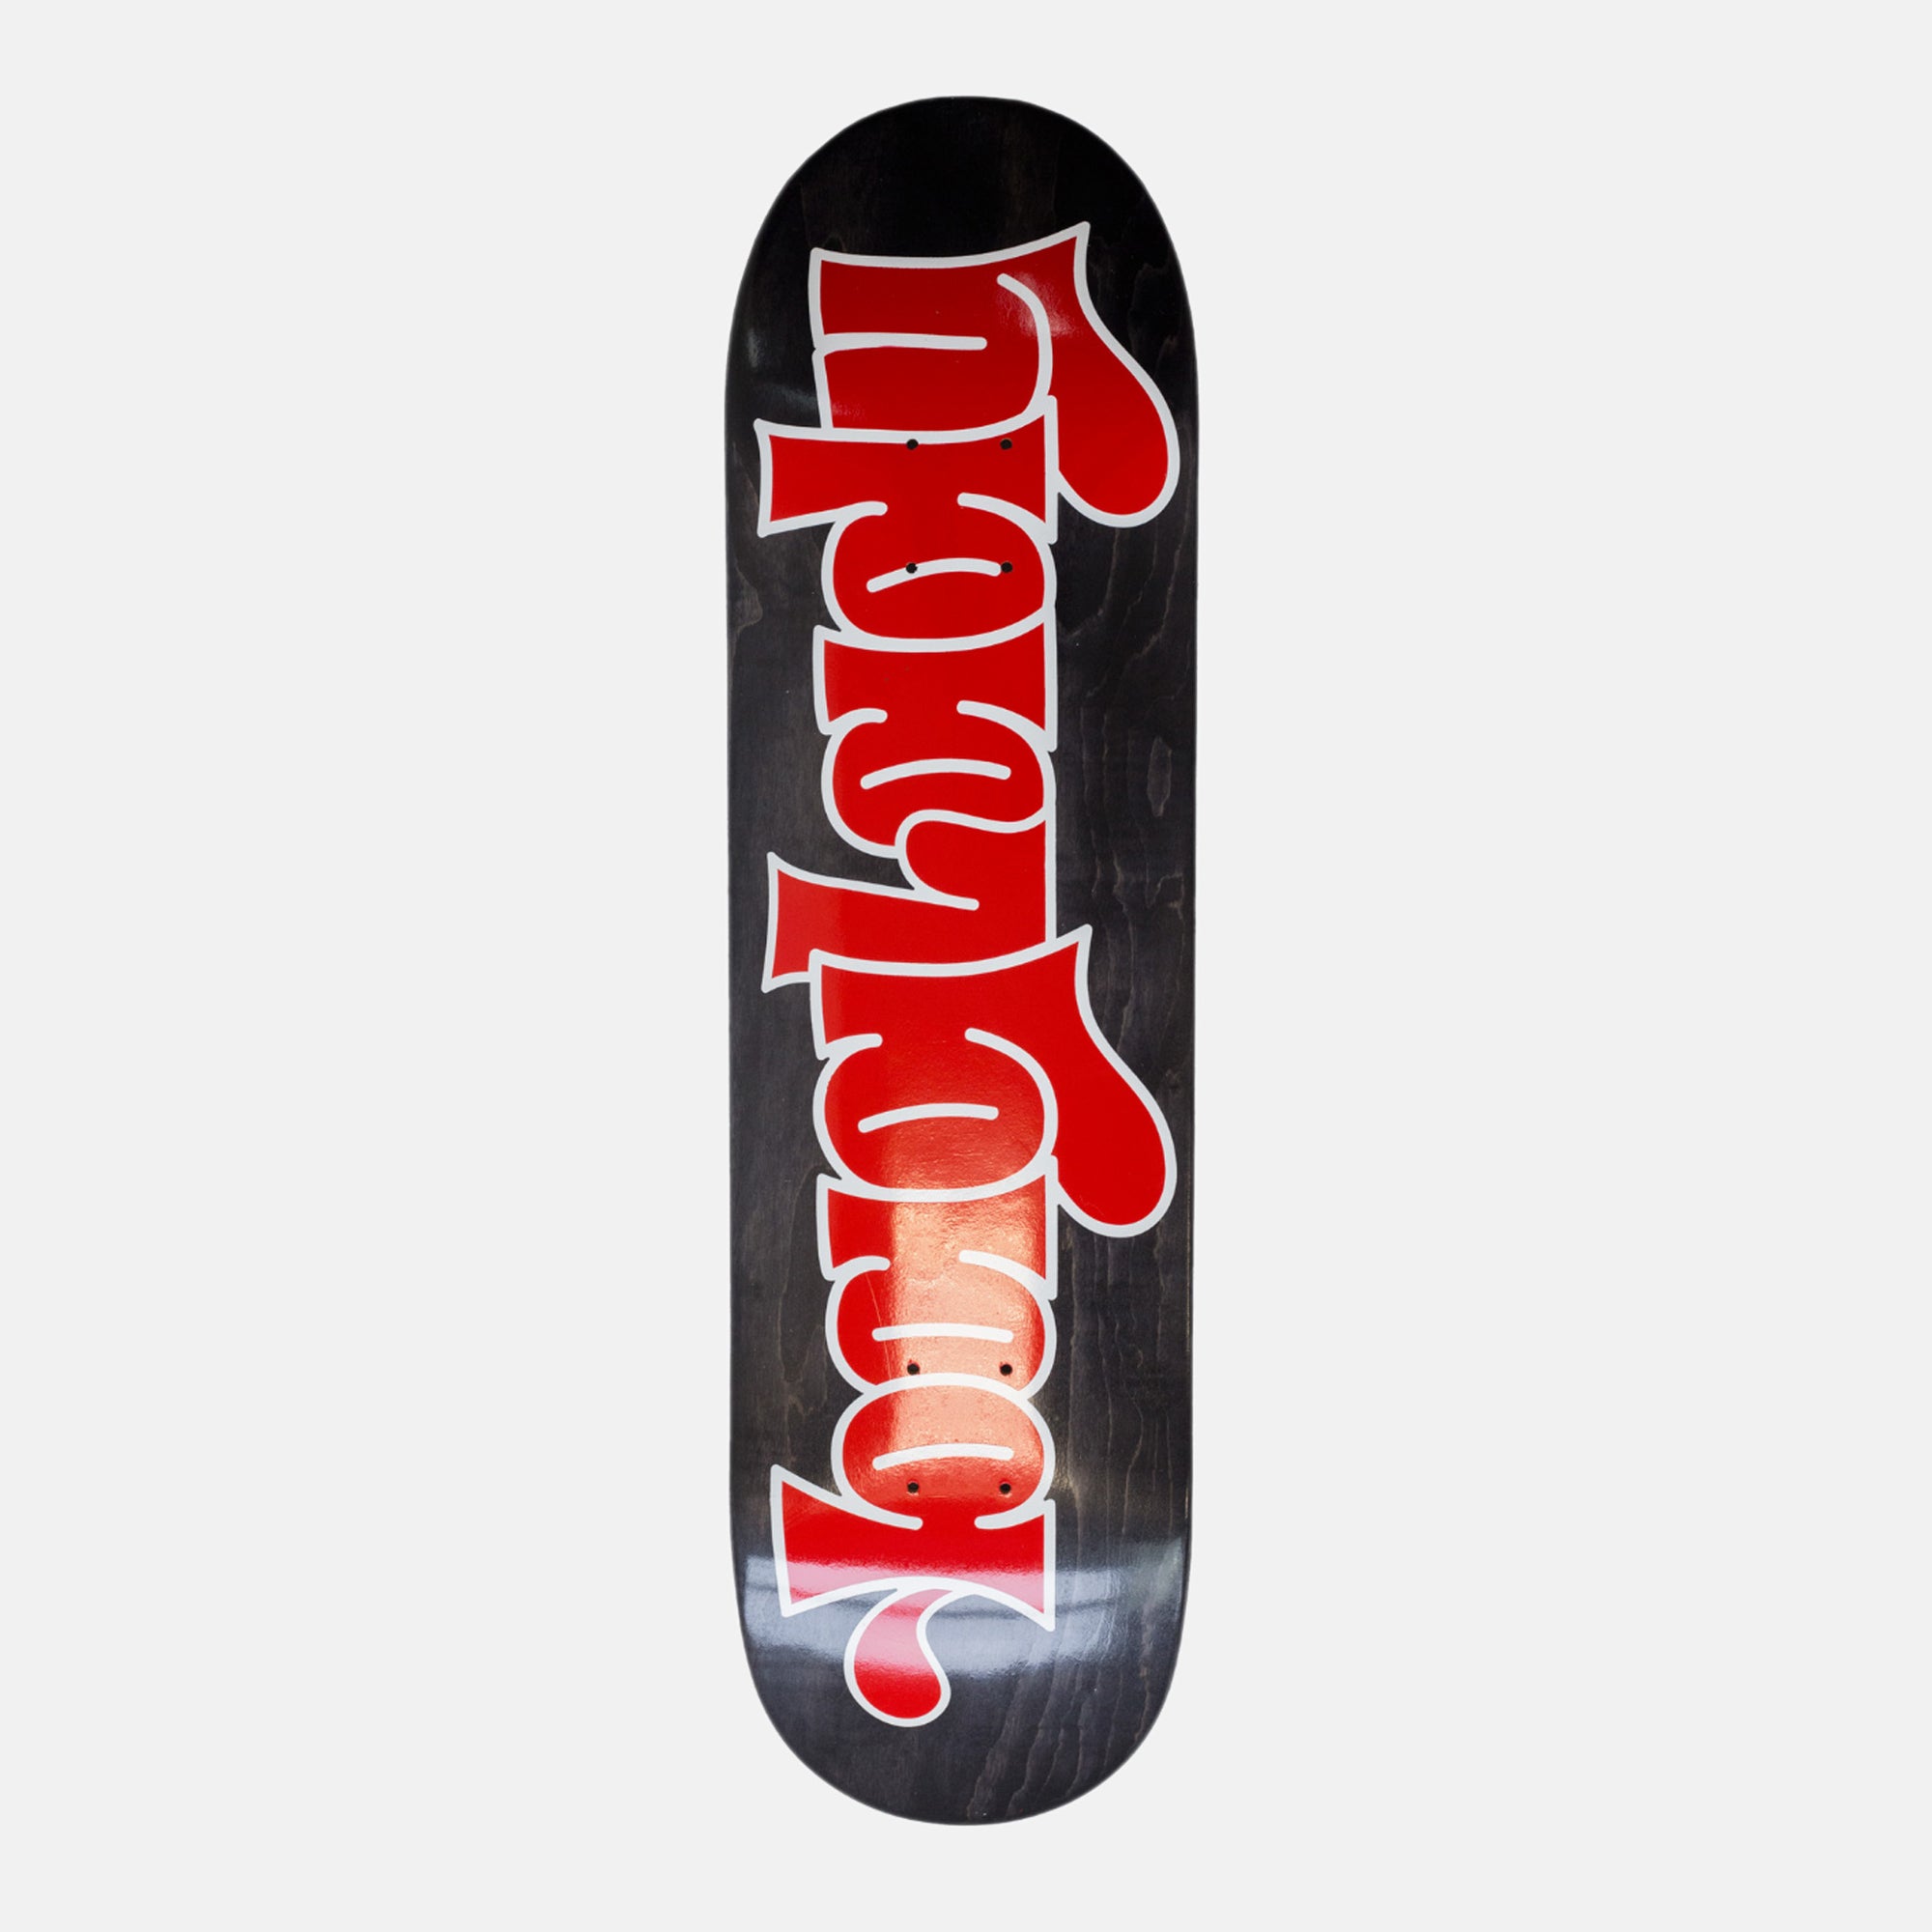 Baglady - 8.125" Throw Up Logo Skateboard Deck (Black)